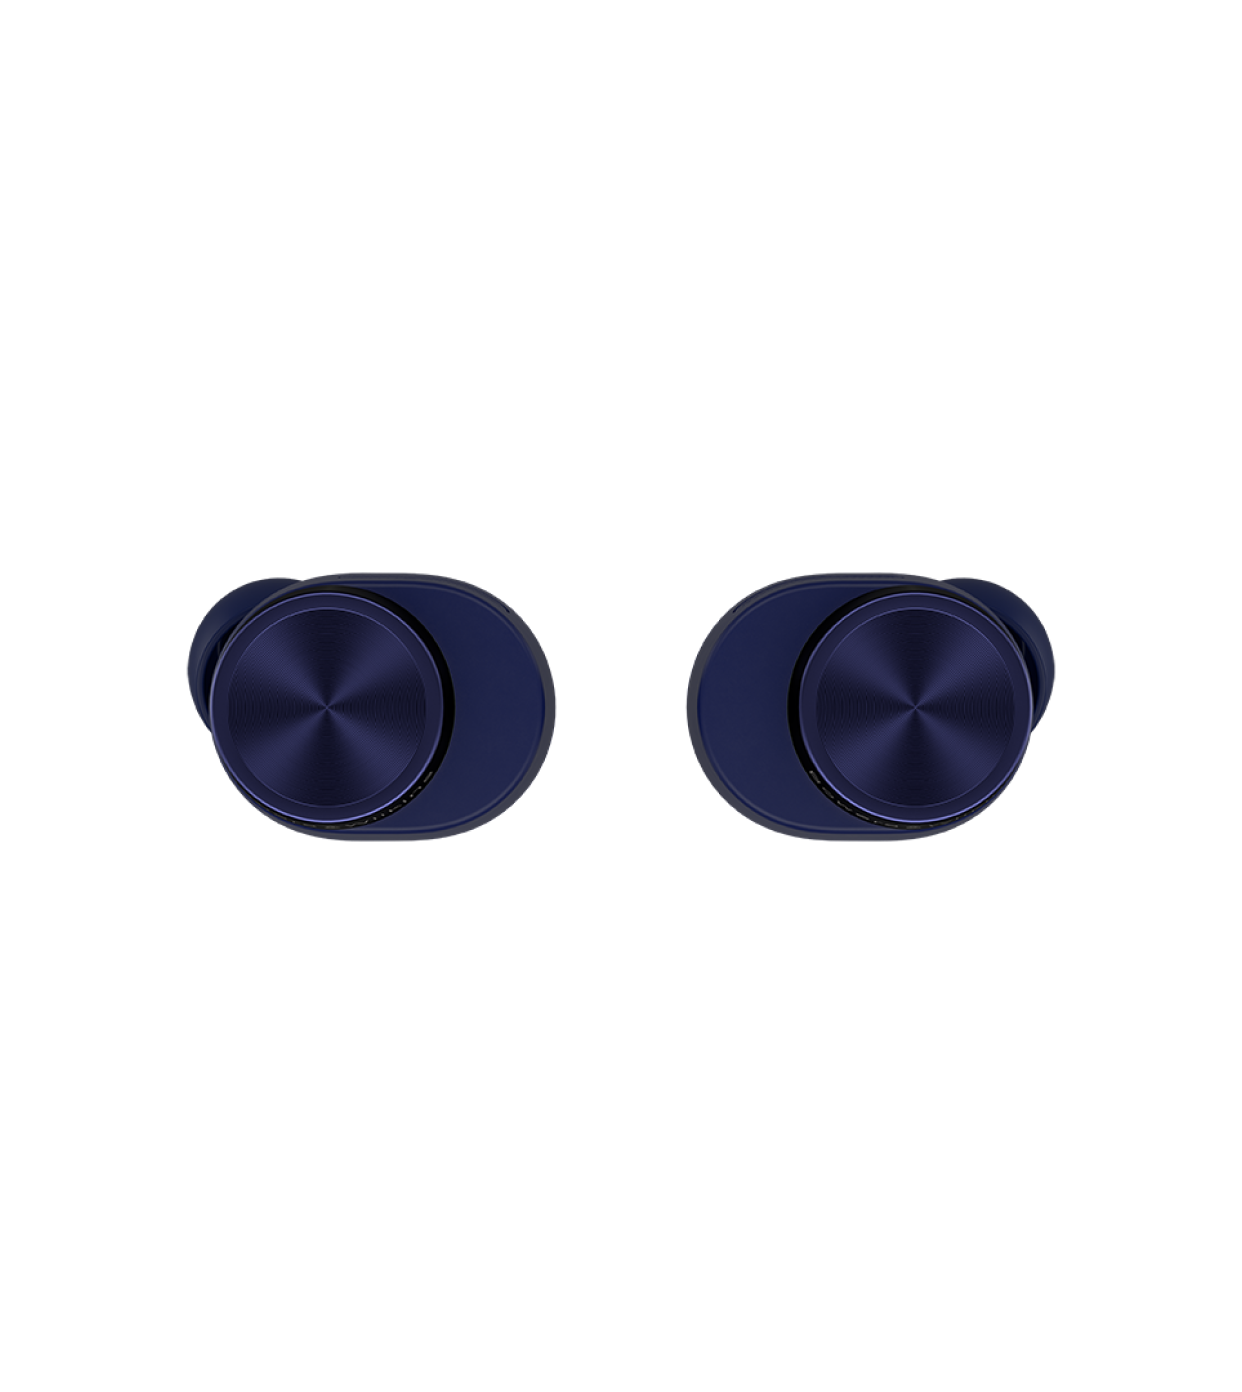 אוזניות Bluetooth אלחוטיות דגם PI7 S2 מבית Bowers & Wilkins צבע Midnight Blue